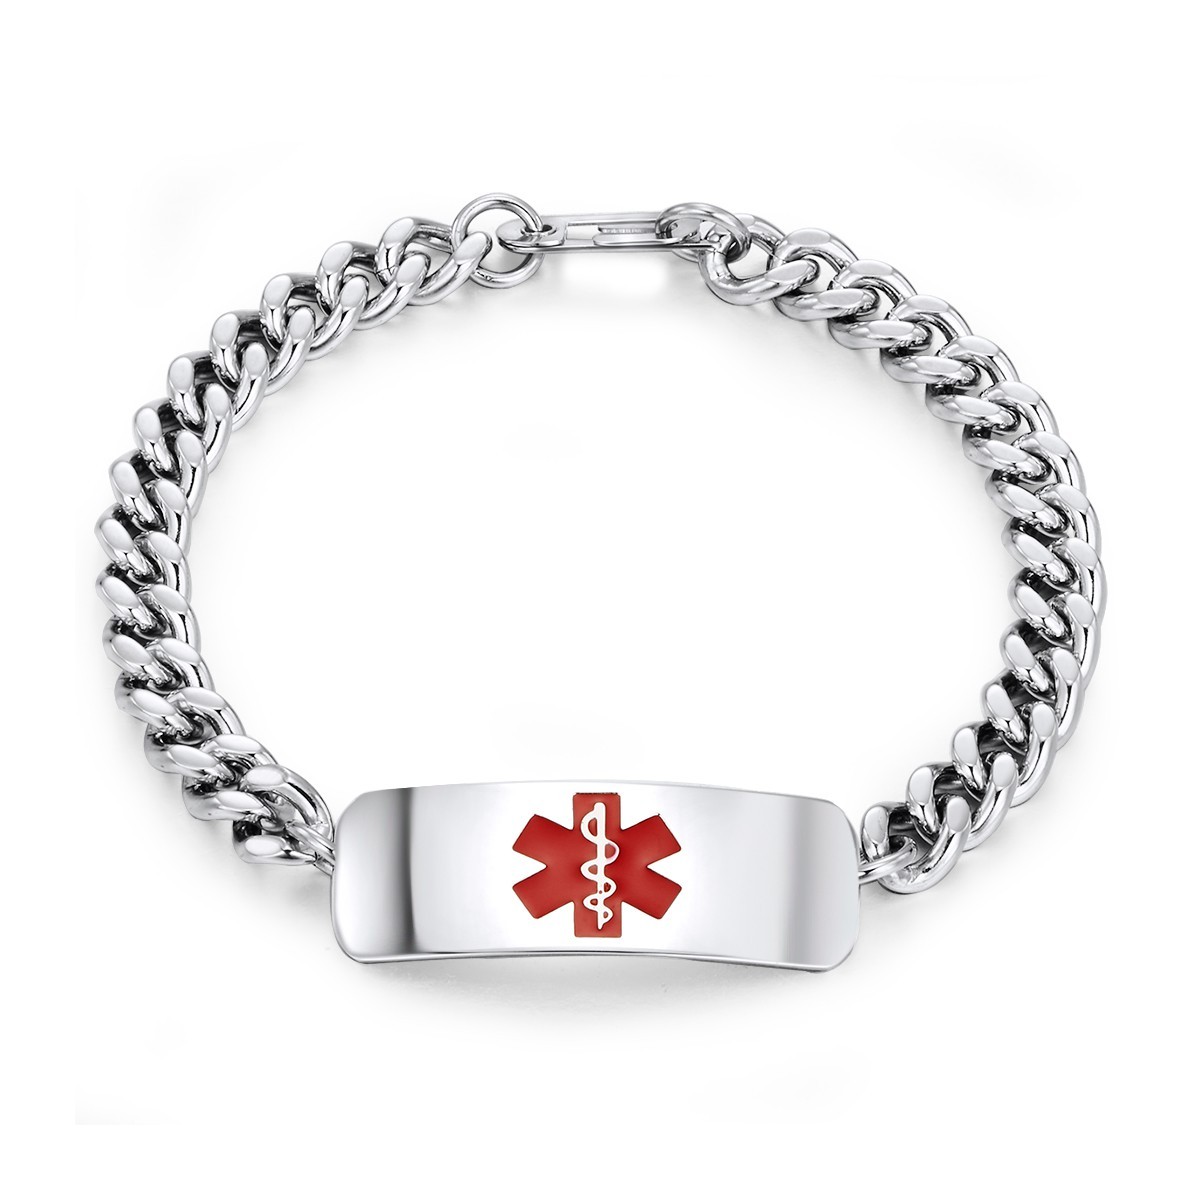  Ladies Engravable Caduceus Medical ID Bracelet in Steel